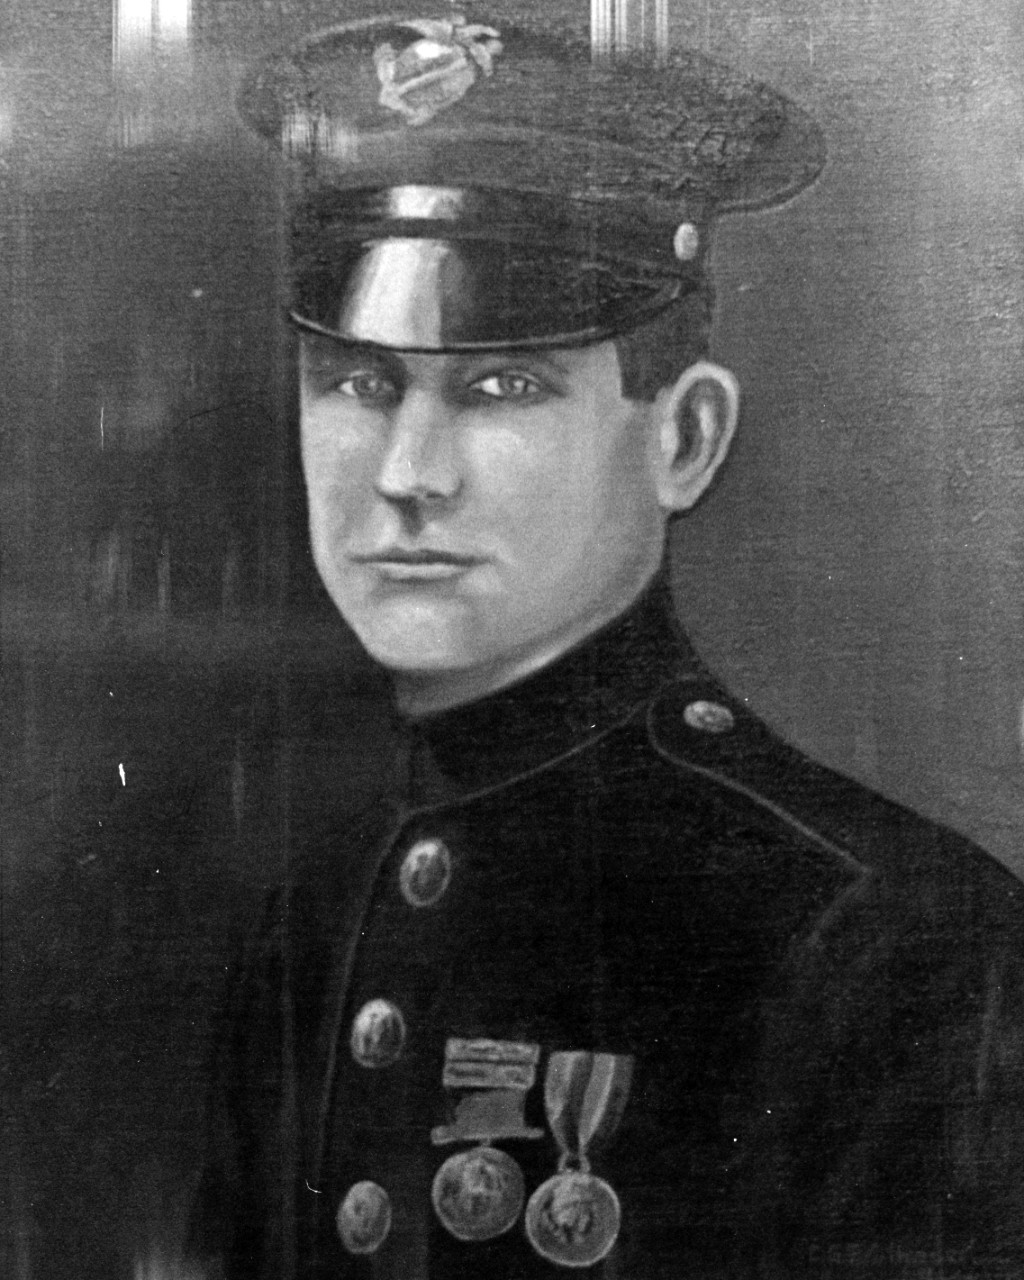 Sergeant Fred W. Stockham, USMC